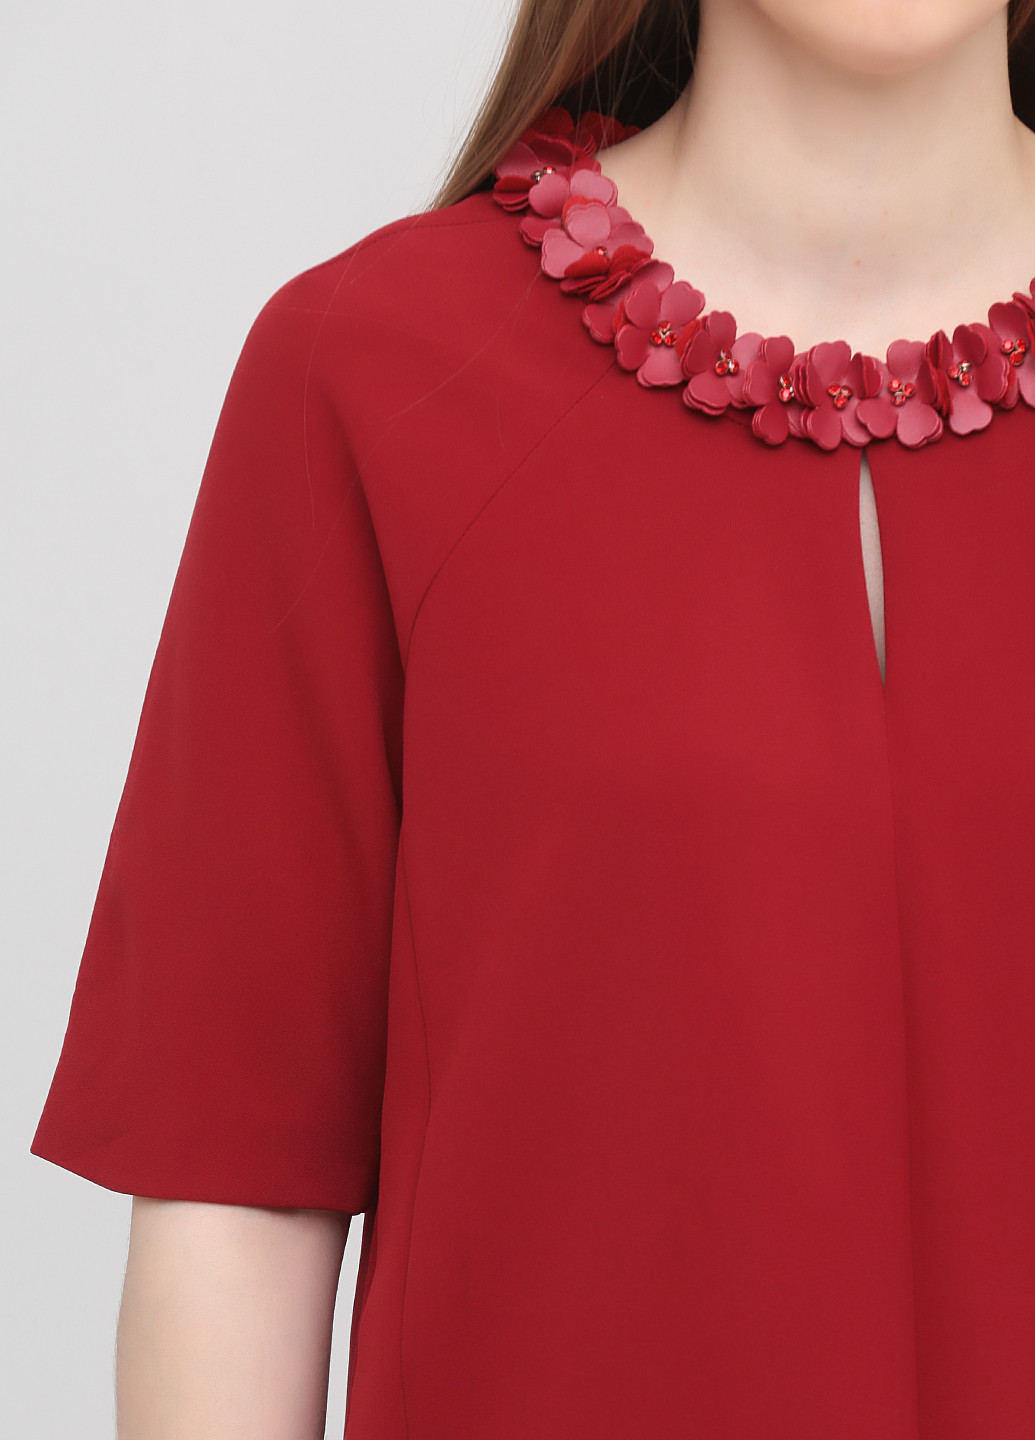 Темно-красная демисезонная блуза Vero Moda